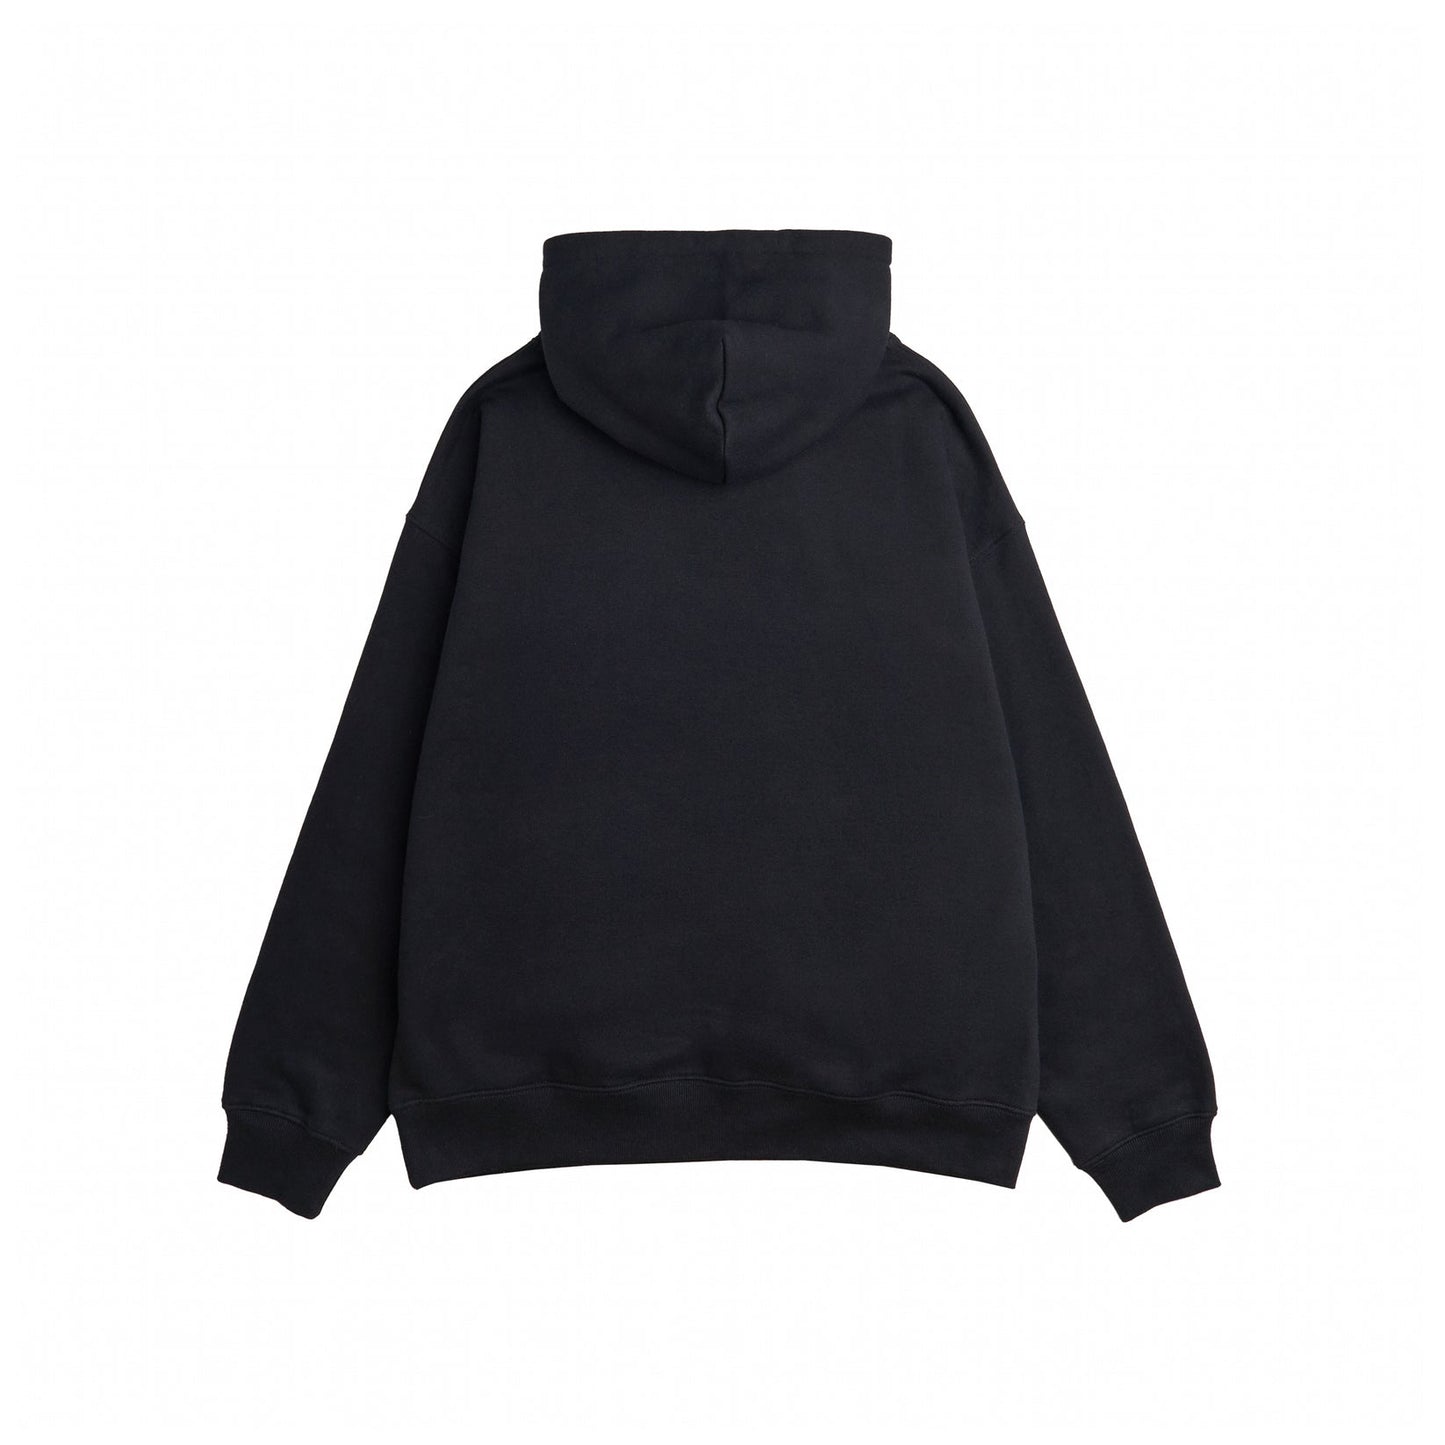 RAVE CASCA zip hoodie black